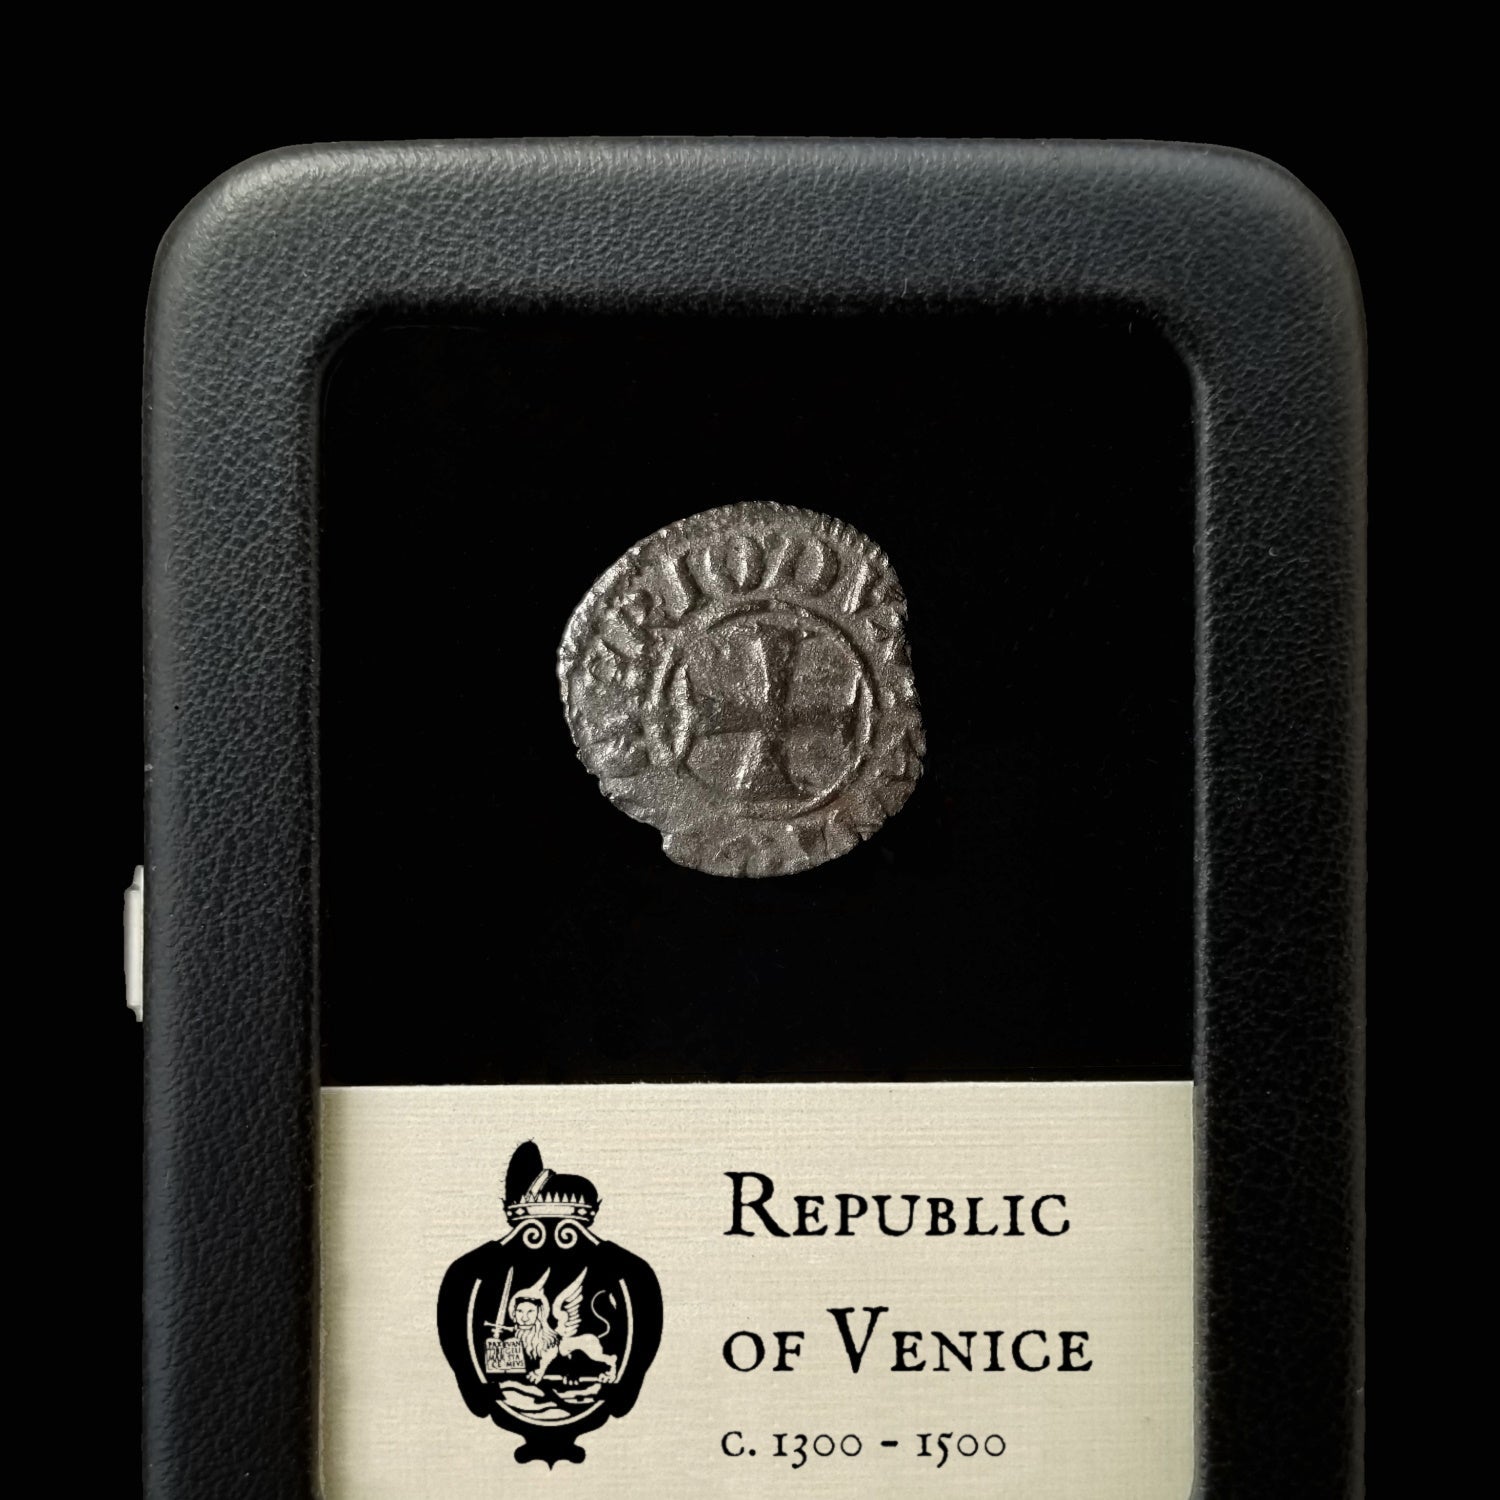 Republic of Venice, Tornesello - 1300's - Italy